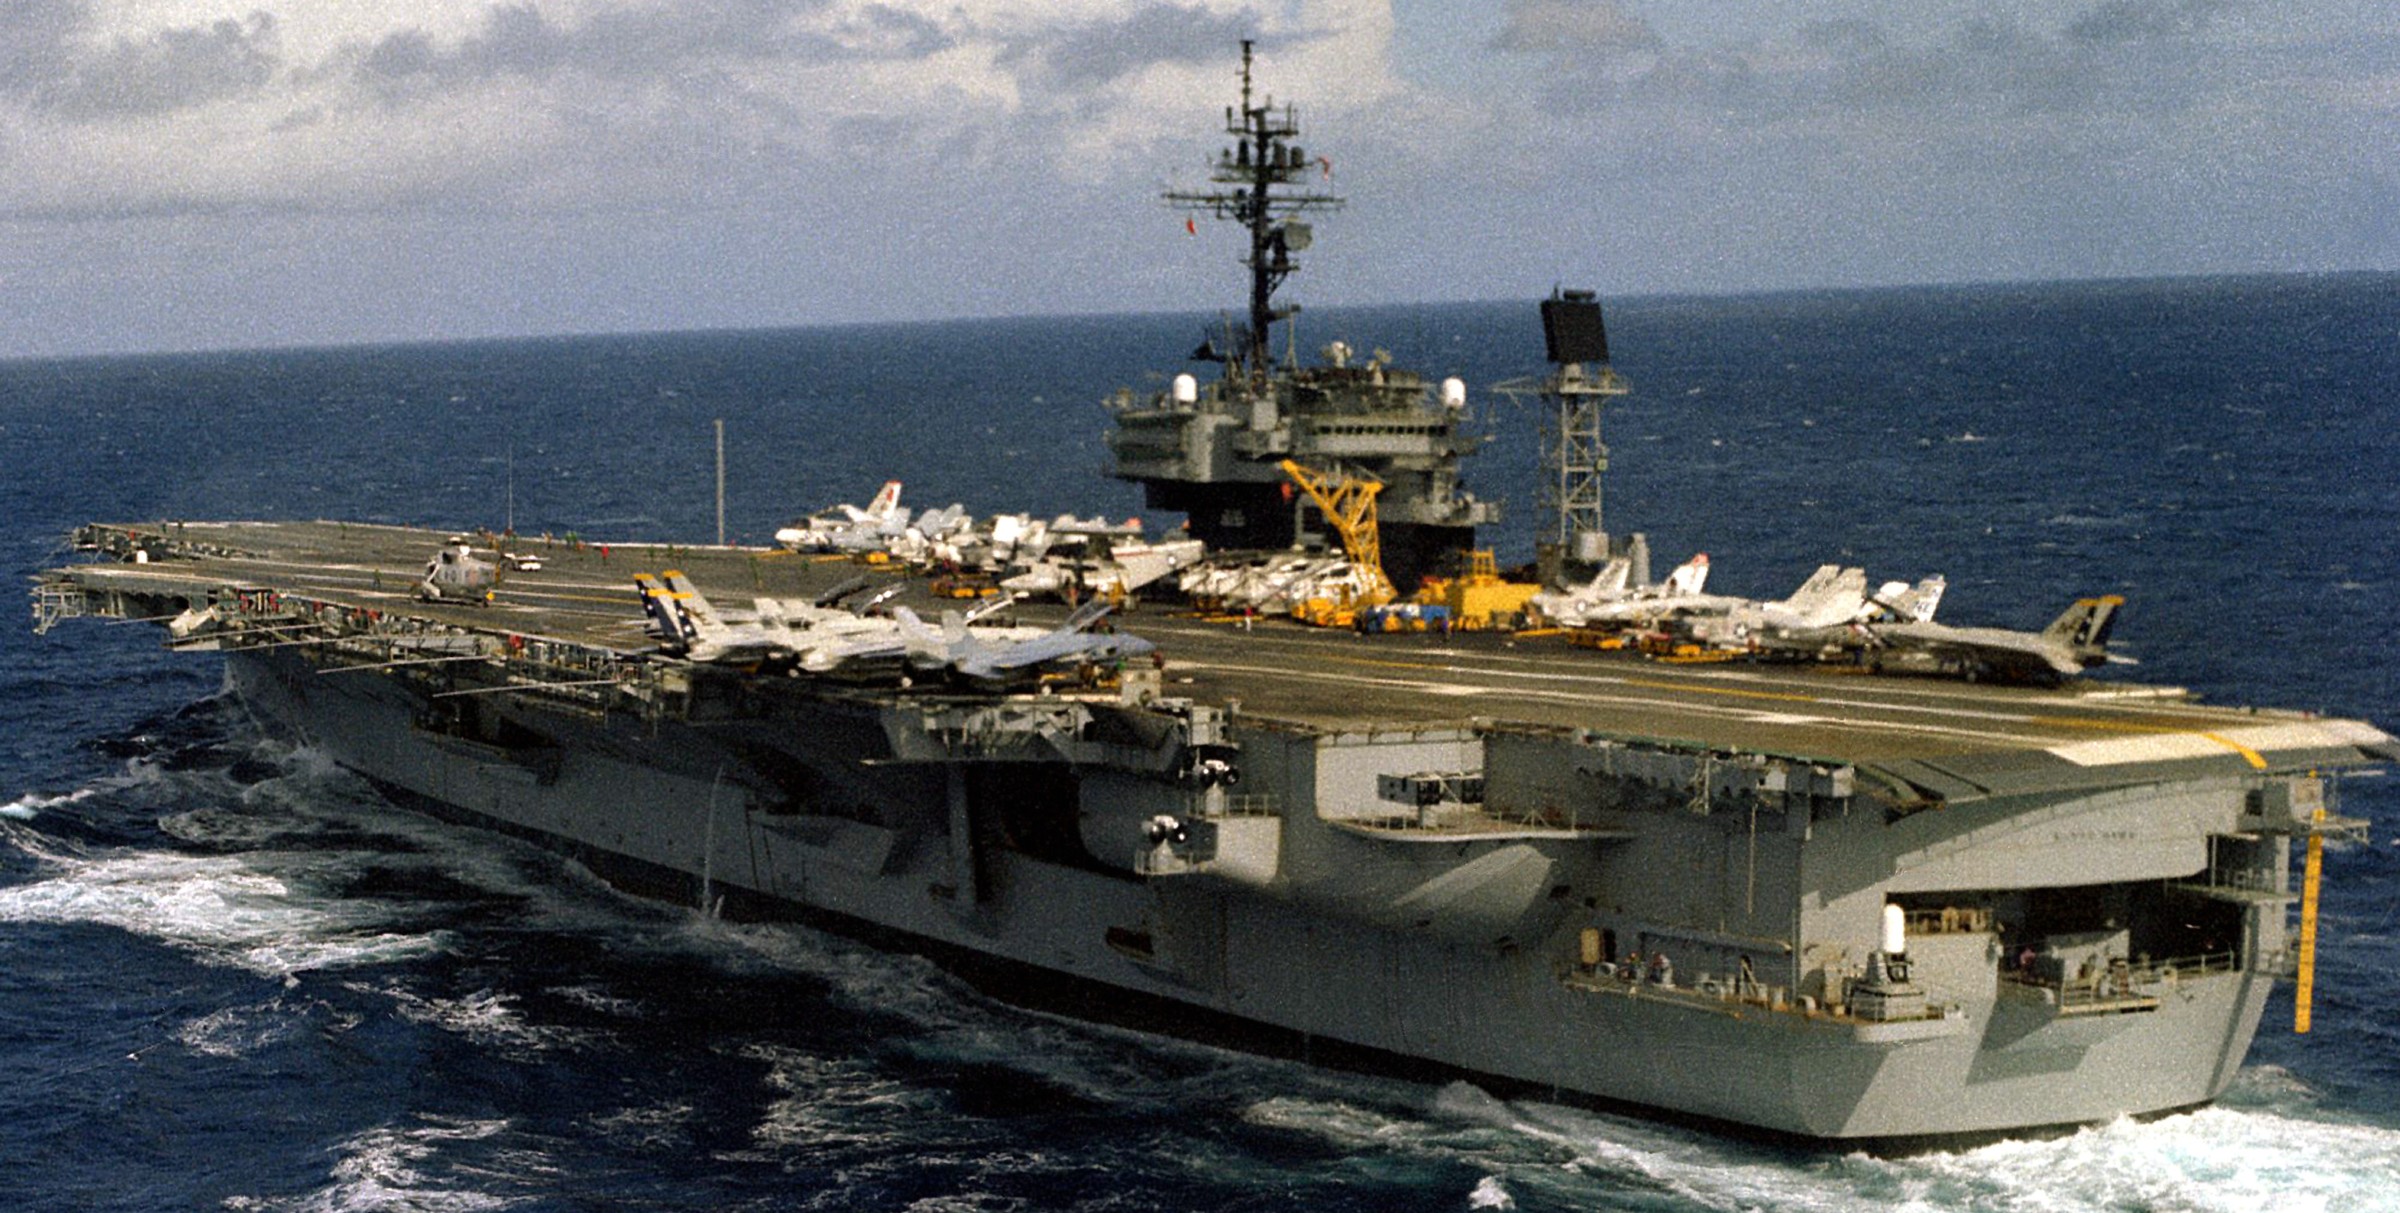 cv-63 uss kitty hawk aircraft carrier air wing cvw-2 us navy 330